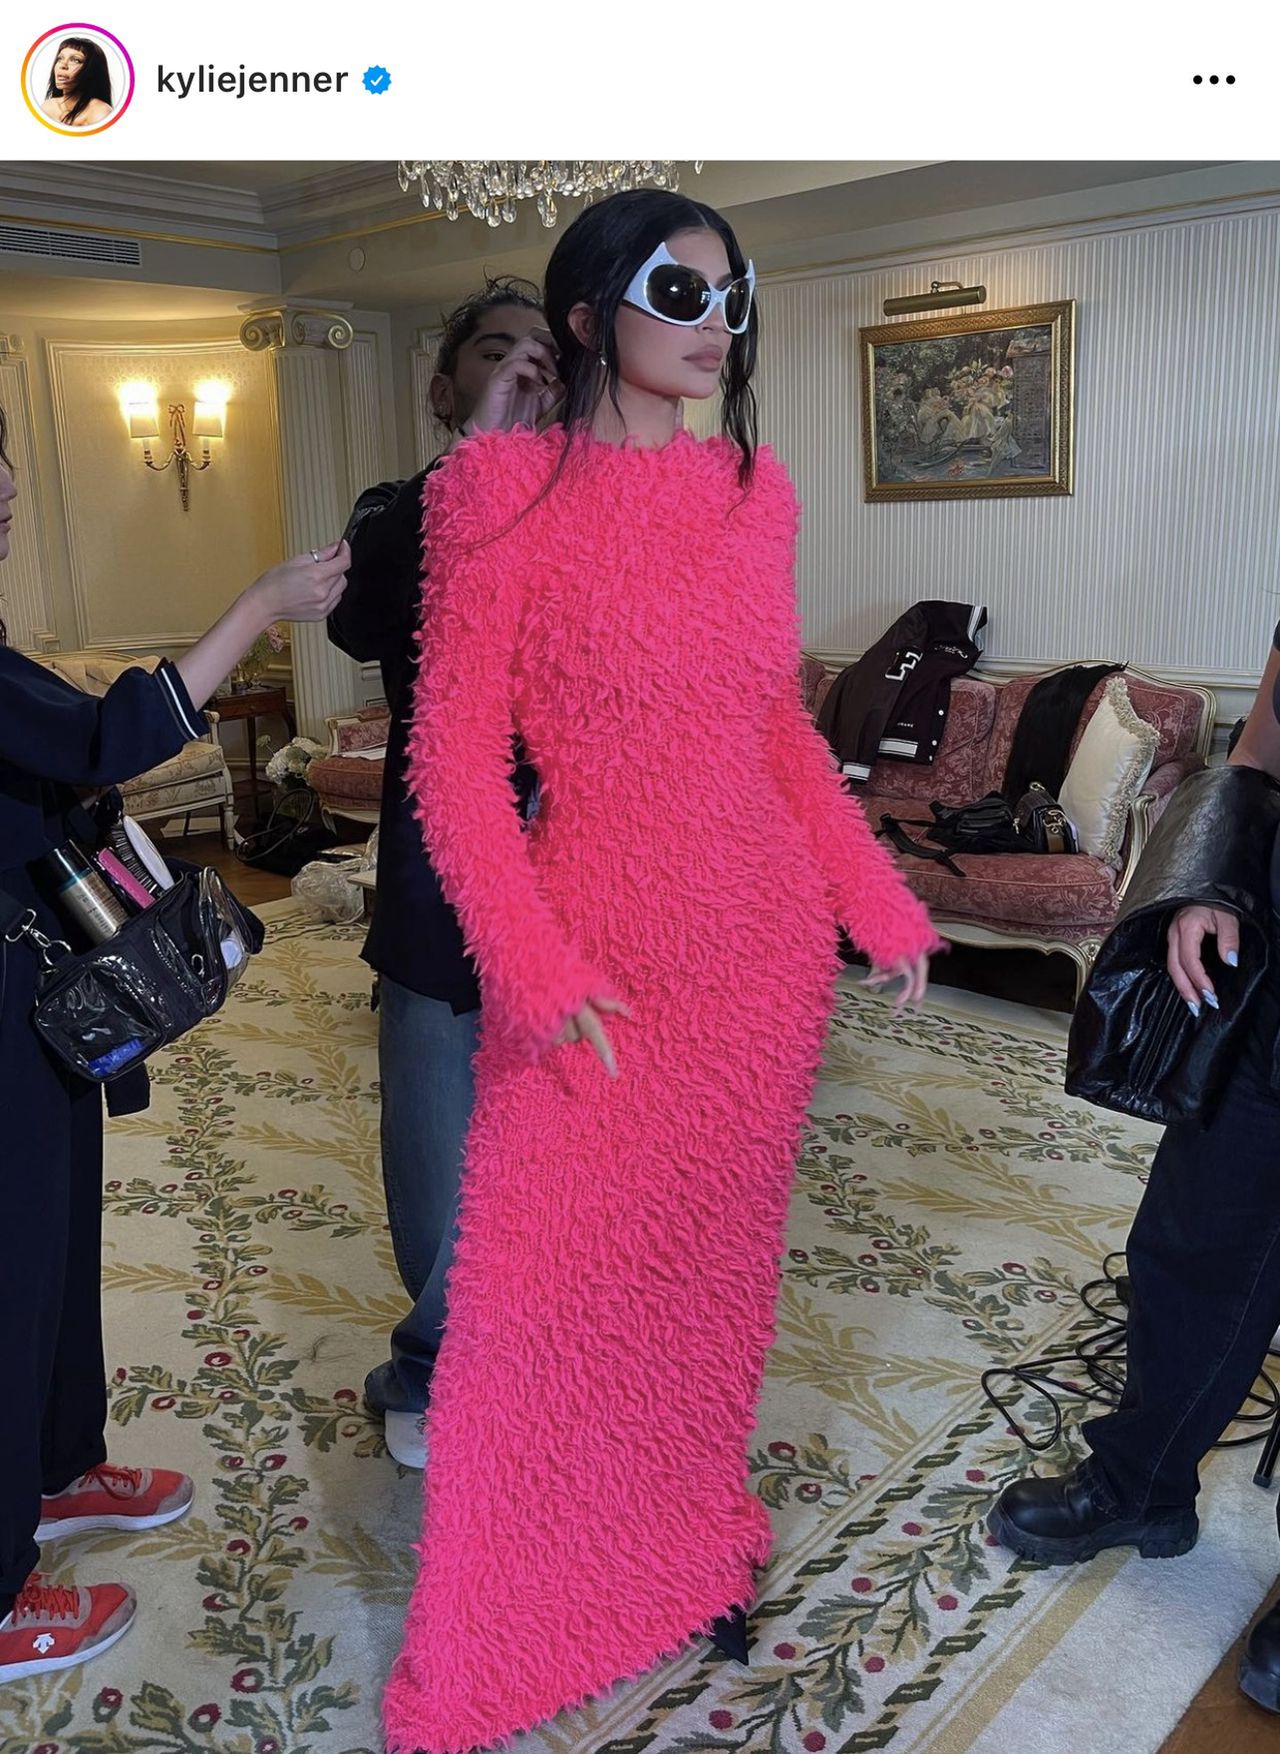 Celebrytka w różowej sukience wspierała pokaz Kanye West
Instagram/kyliejenner